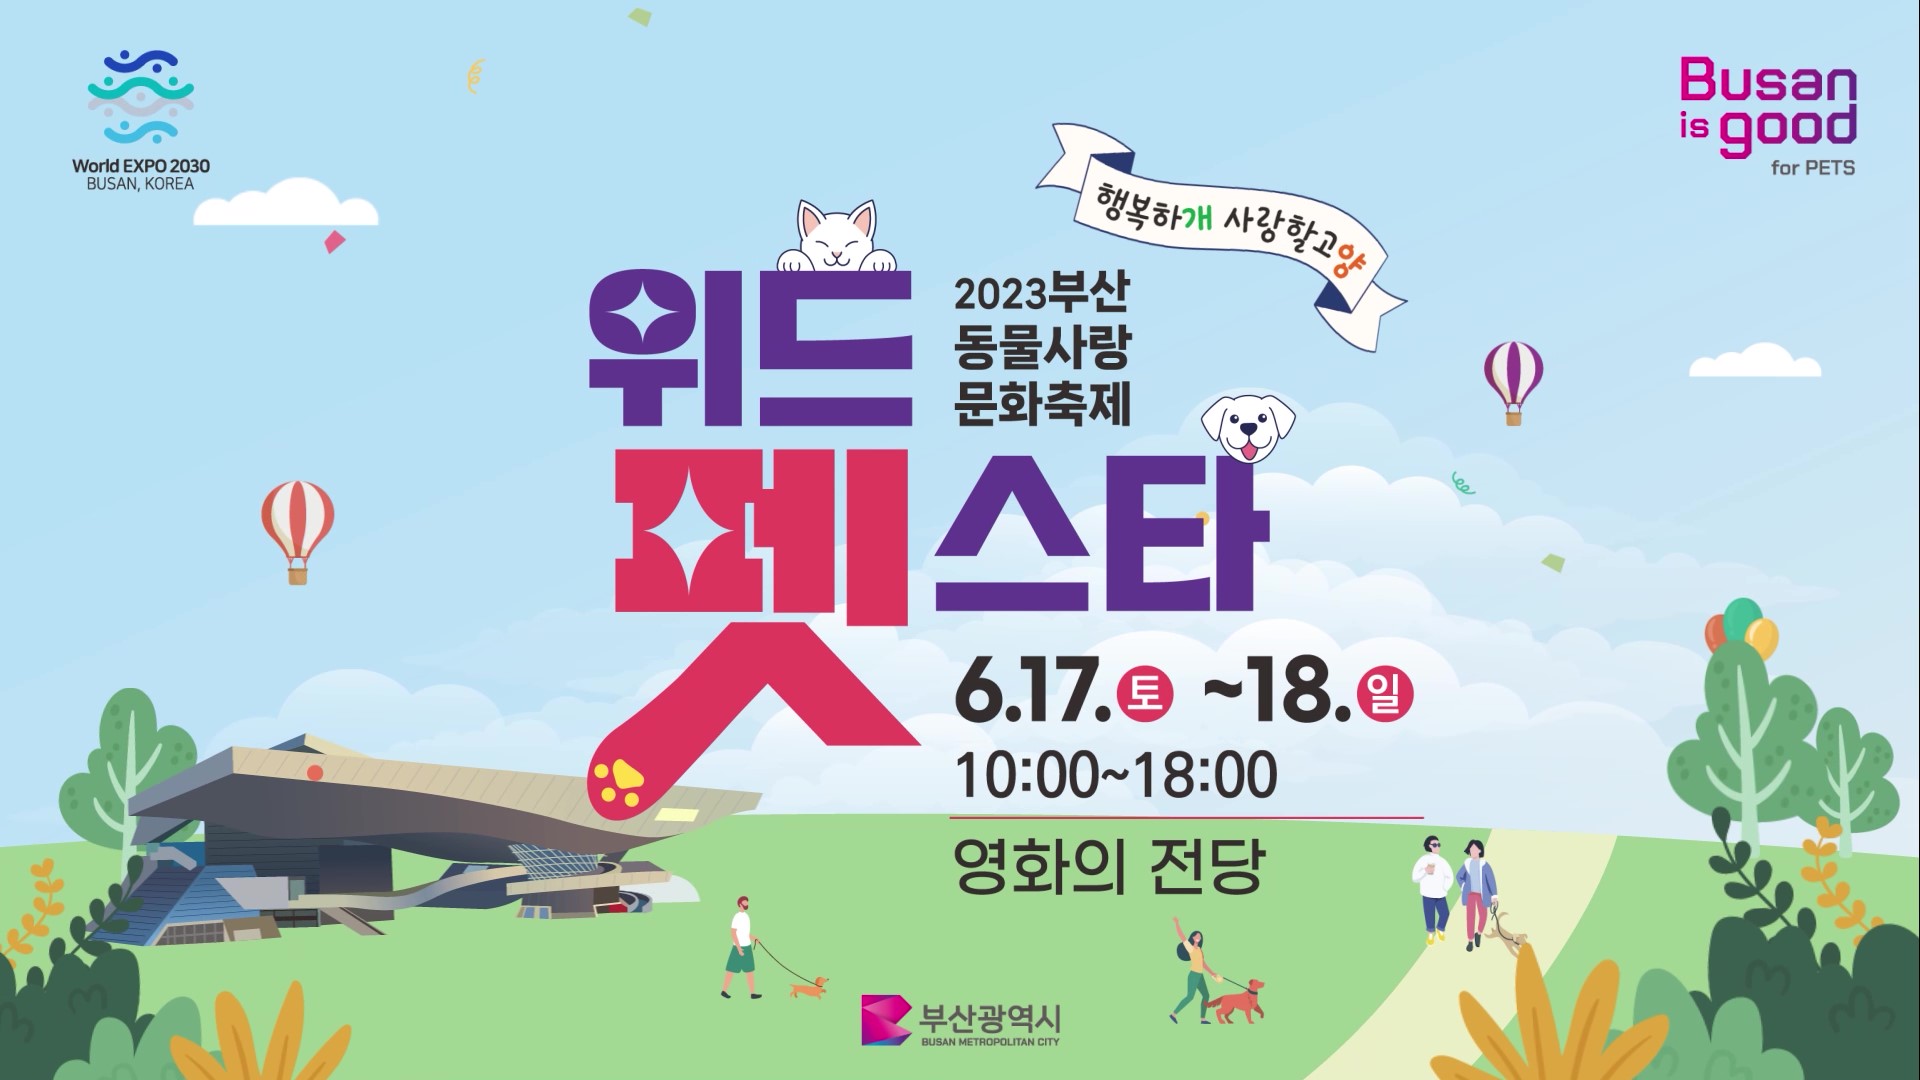 2023 위드펫스타 (부산 동물사랑 문화축제) 홍보영상 썸네일